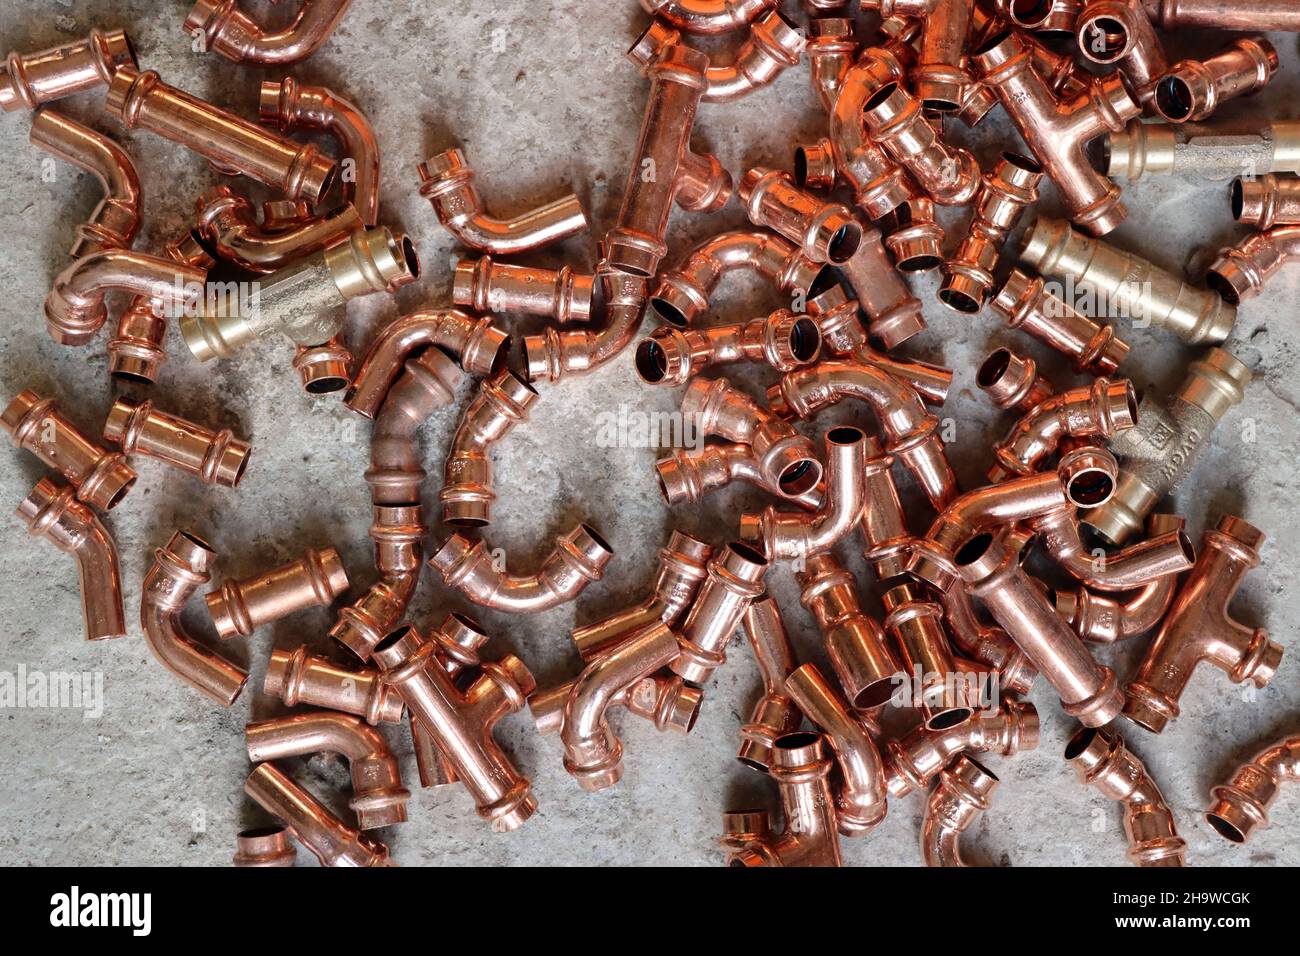 Heizungsrohre aus Kupfer - diverse Kleinteile Stock Photo